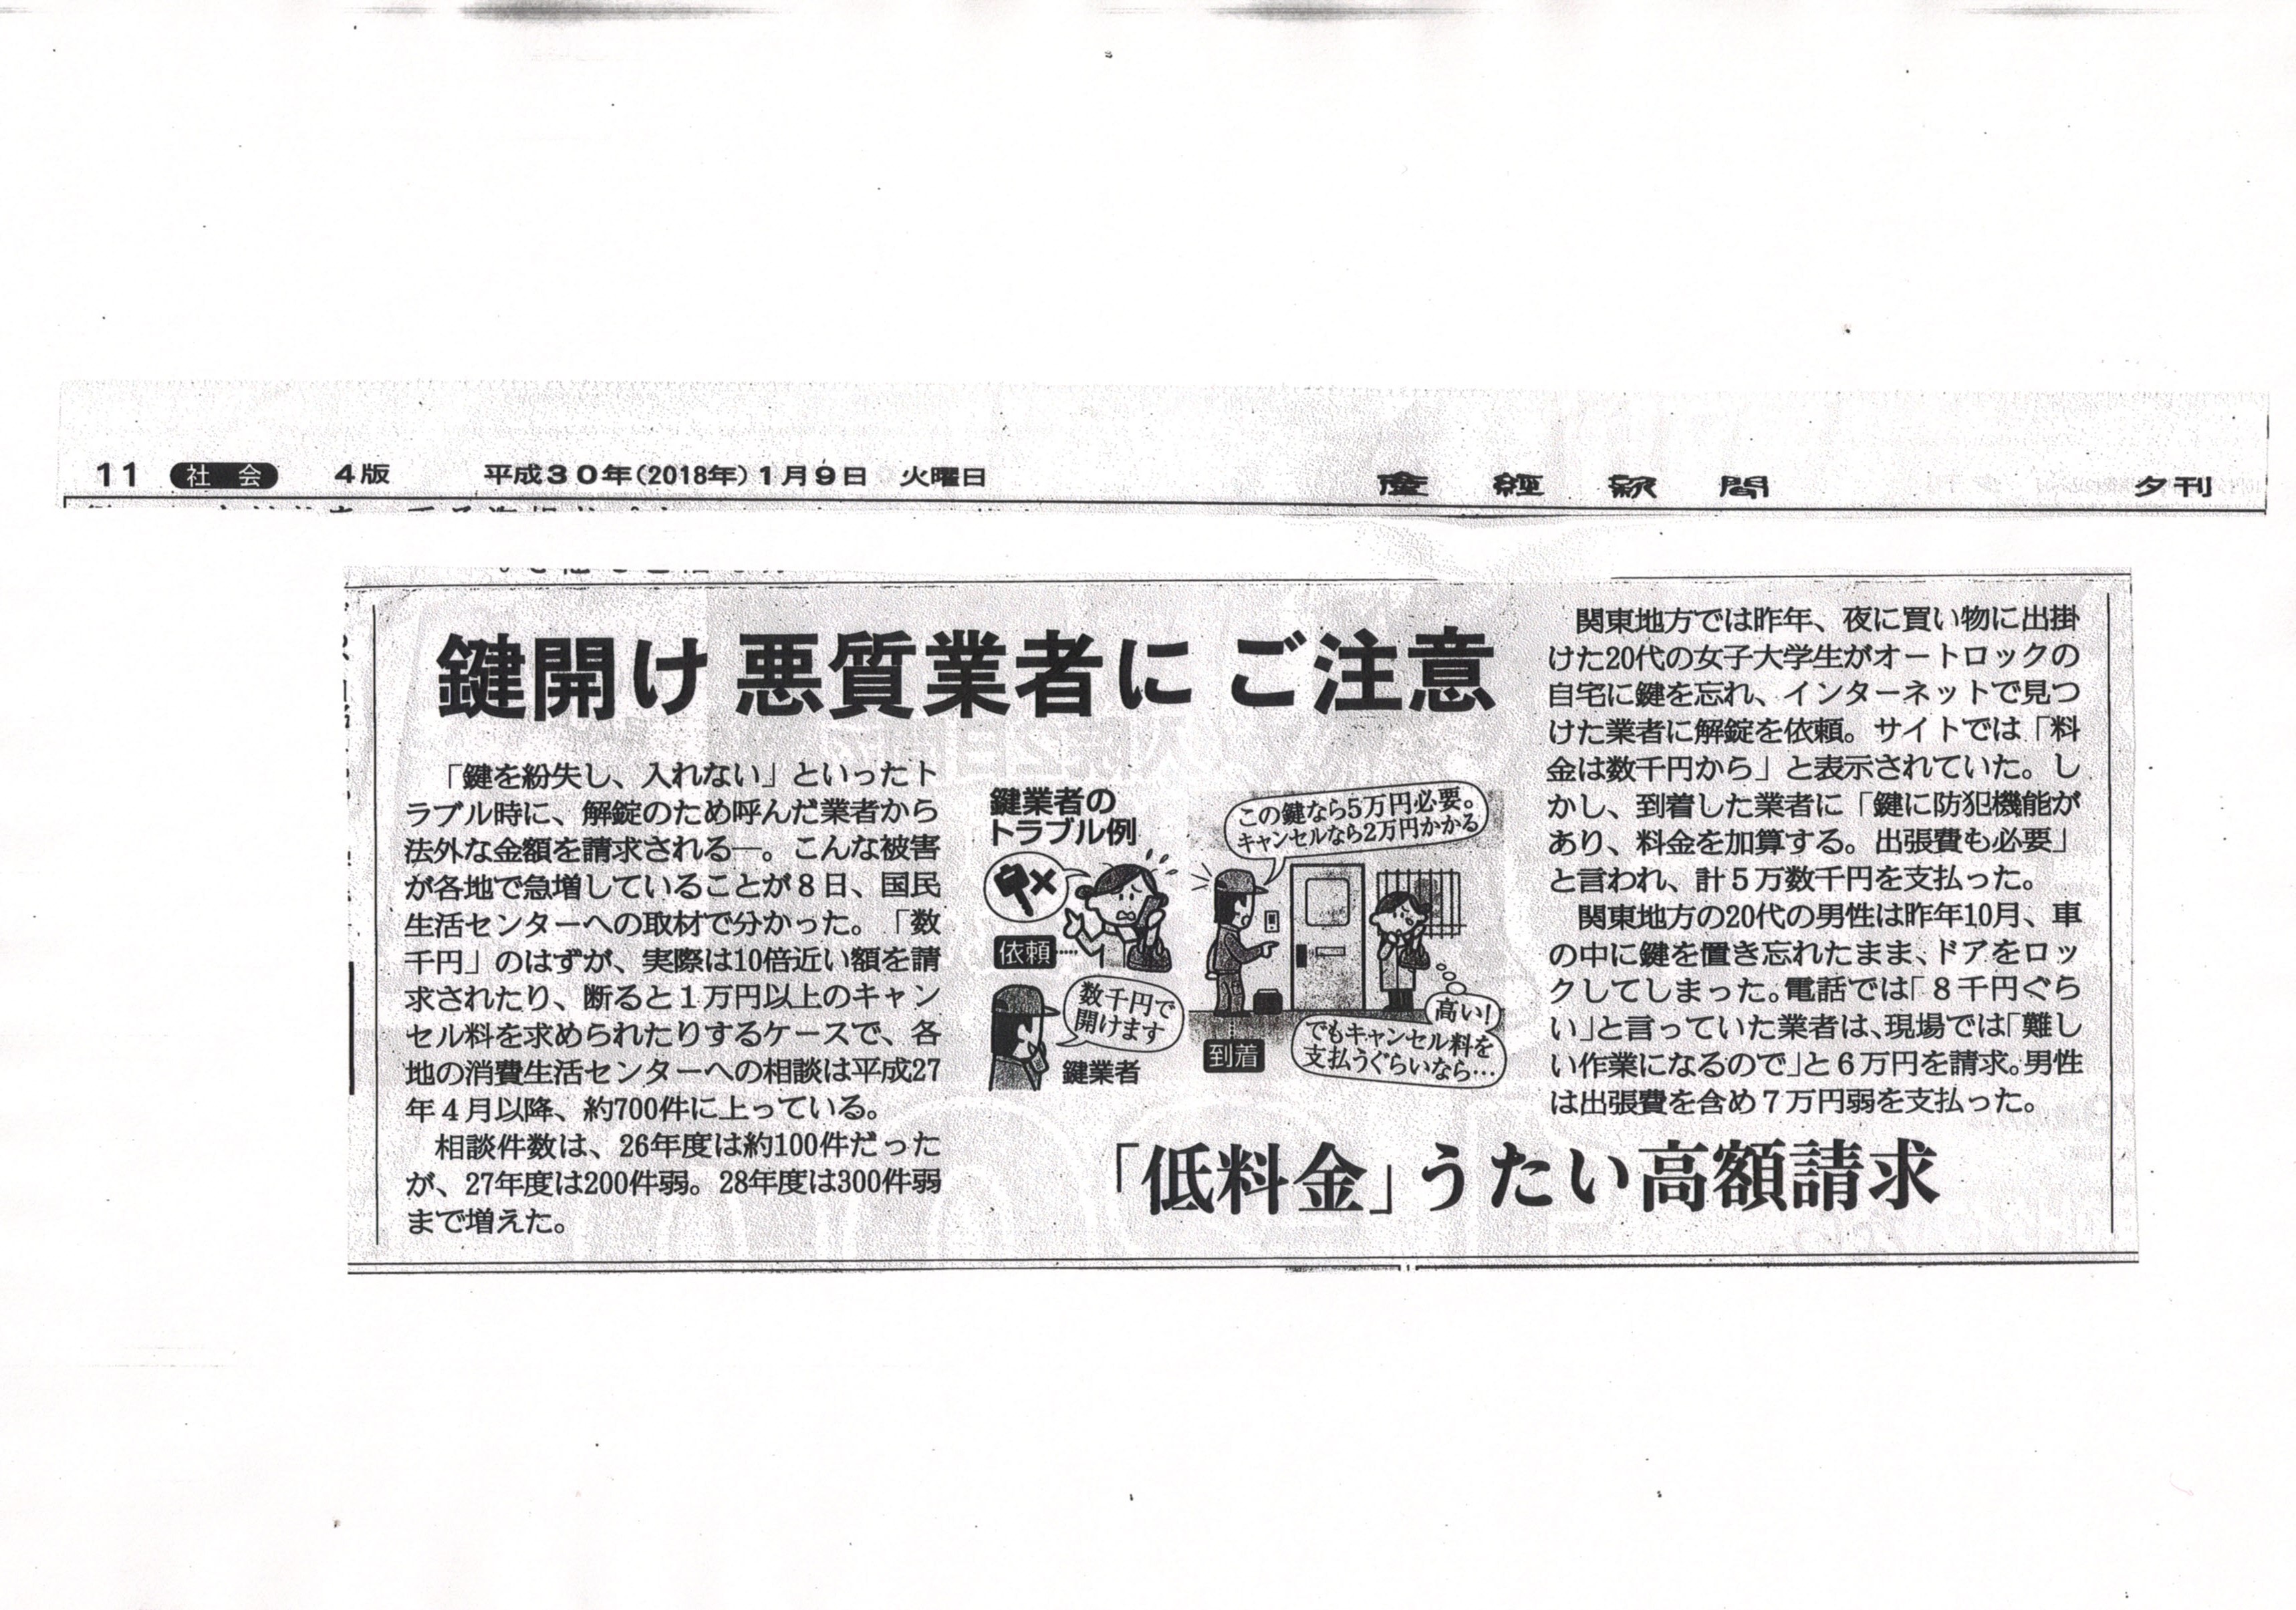 鍵開け悪質業者にご注意という見出しの記事です。　産経新聞１月９日夕刊